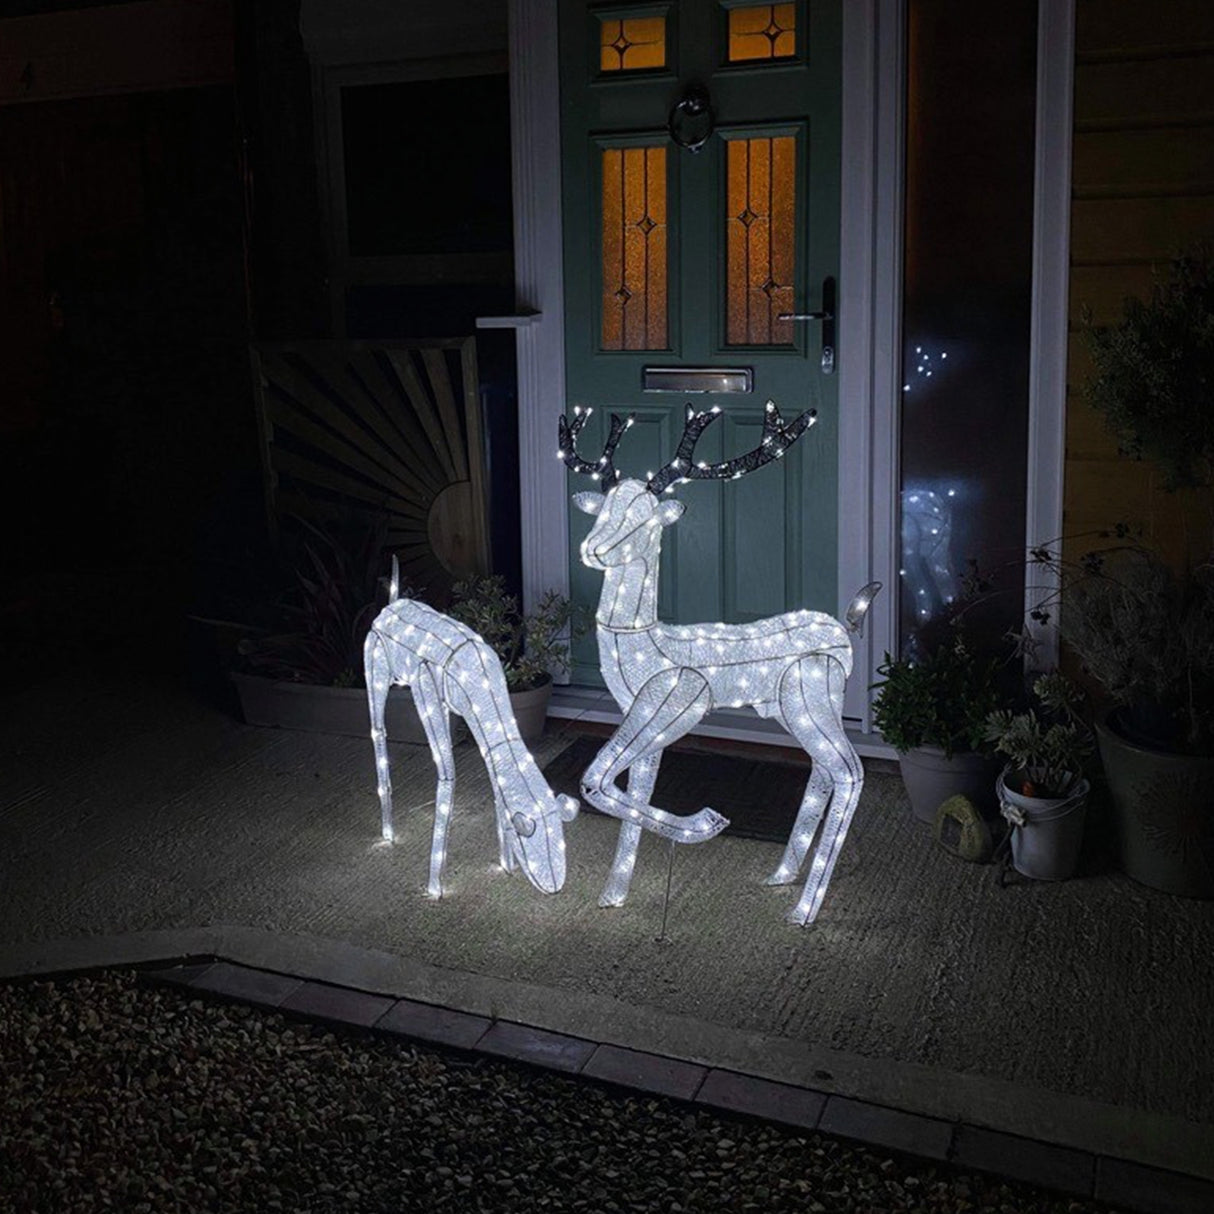 Large Light Up Stag & Doe Reindeer Set